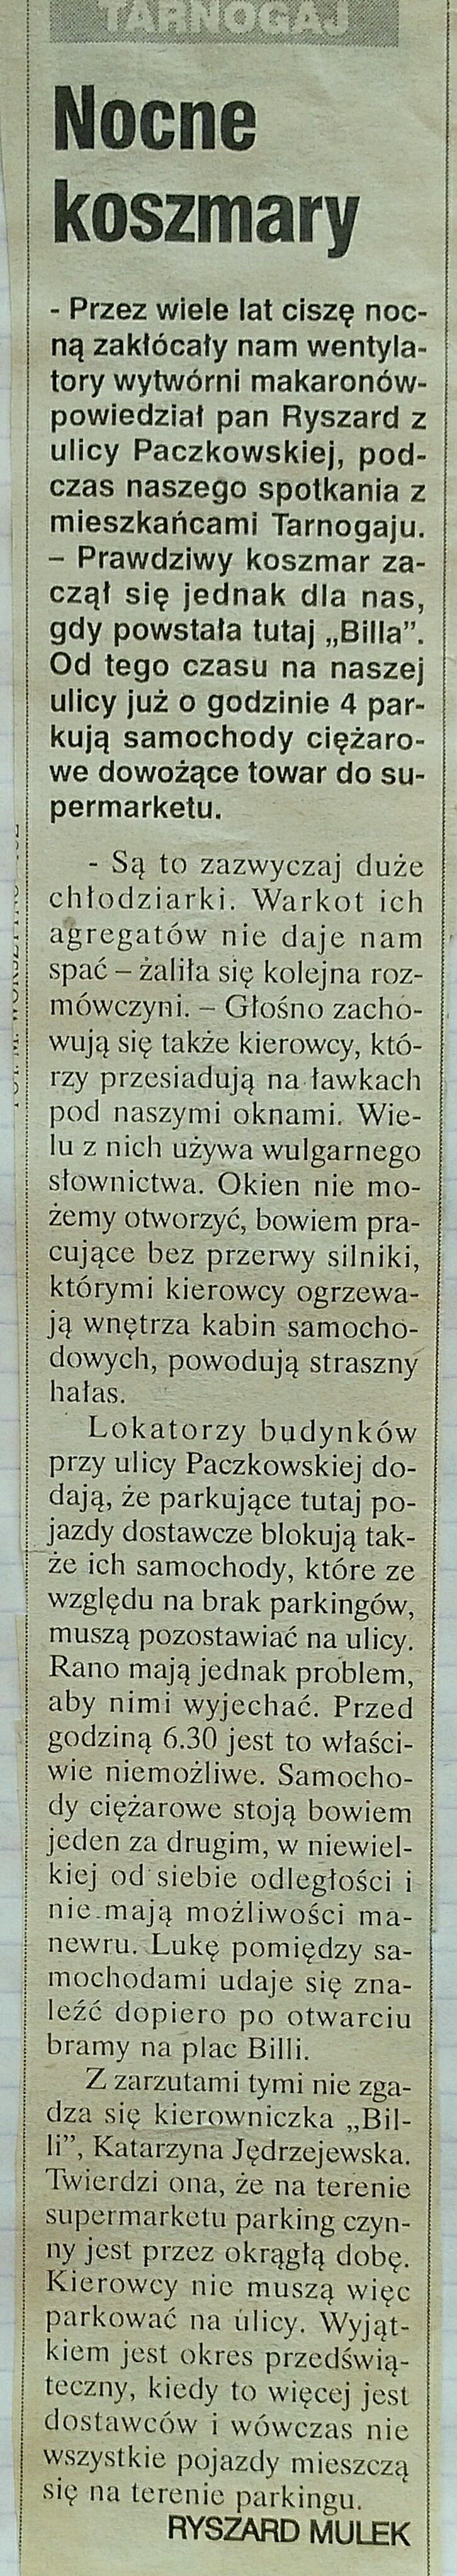 16 2000 maj 22 Wieczór Wrocławia